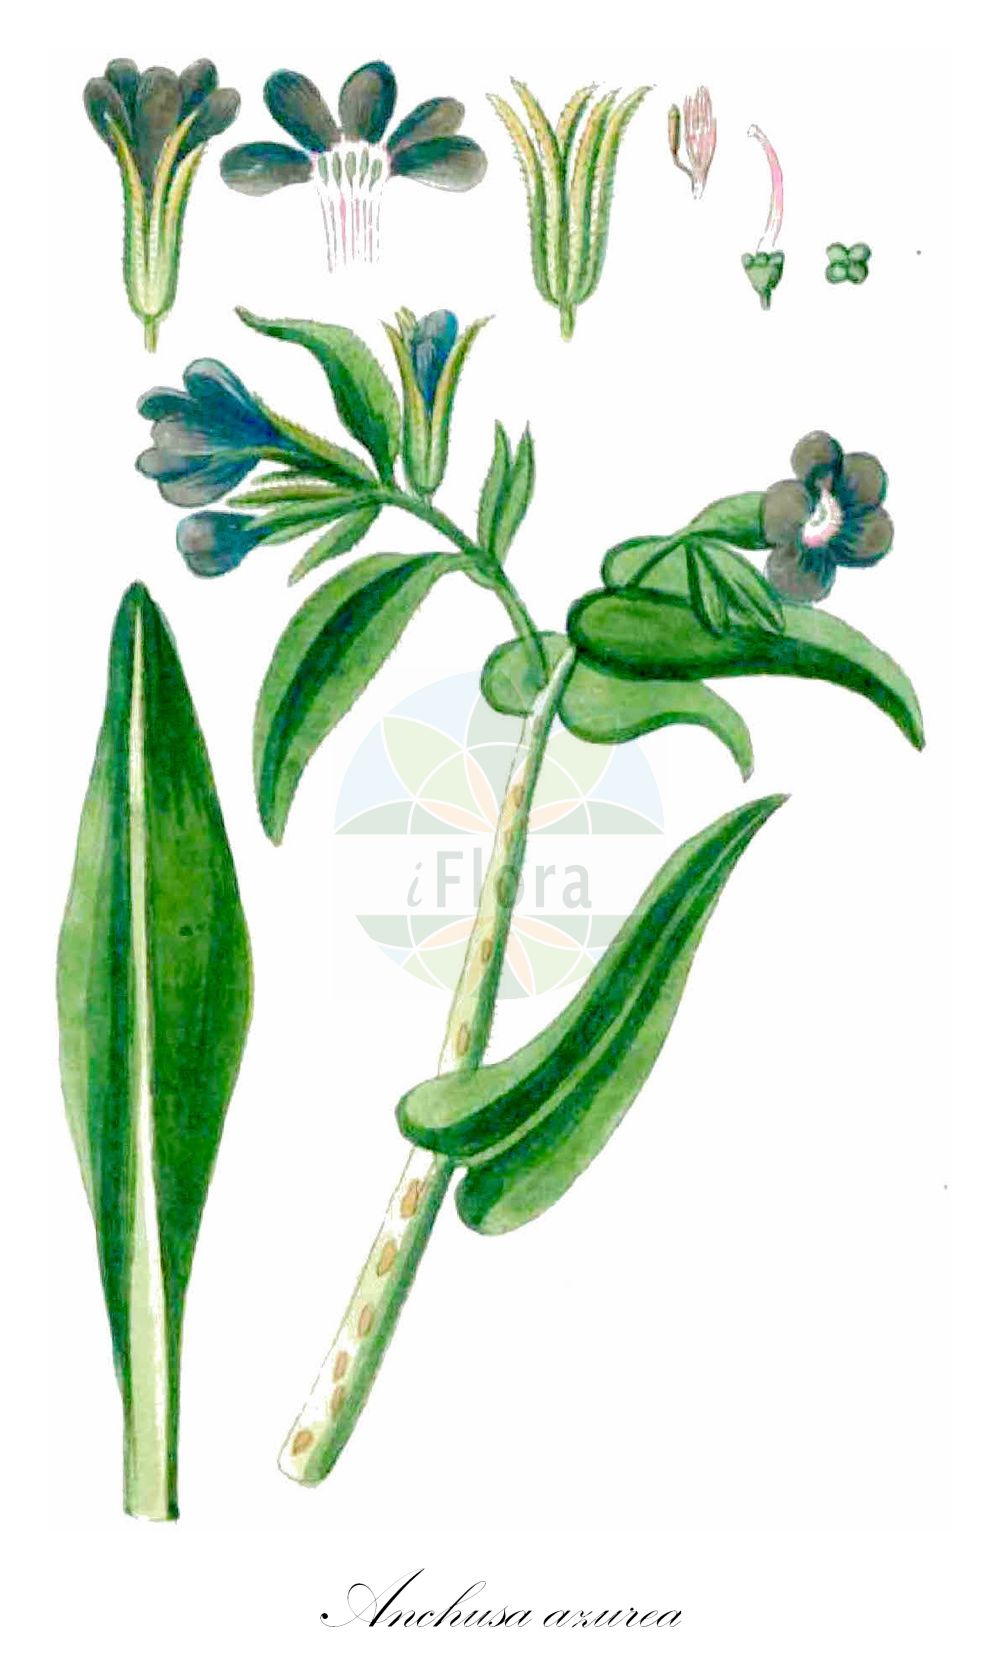 Historische Abbildung von Anchusa azurea (Italienische Ochsenzunge - Garden Anchusa). Das Bild zeigt Blatt, Bluete, Frucht und Same. ---- Historical Drawing of Anchusa azurea (Italienische Ochsenzunge - Garden Anchusa). The image is showing leaf, flower, fruit and seed.(Anchusa azurea,Italienische Ochsenzunge,Garden Anchusa,Anchusa azurea,Anchusa biceps,Anchusa italica,Anchusa macrocarpa,Anchusa macrophylla,Anchusa paniculata,Buglossum italicum,Buglossum vulgare,Italienische Ochsenzunge,Garden Anchusa,Italian Alkanet,Italian Bugloss,Large Blue Alkanet,Anchusa,Ochsenzunge,Bugloss,Boraginaceae,Raublattgewächse,Forget-me-Not family,Blatt,Bluete,Frucht,Same,leaf,flower,fruit,seed,Gesellschaft Kraeuterkenner (1778-1794))